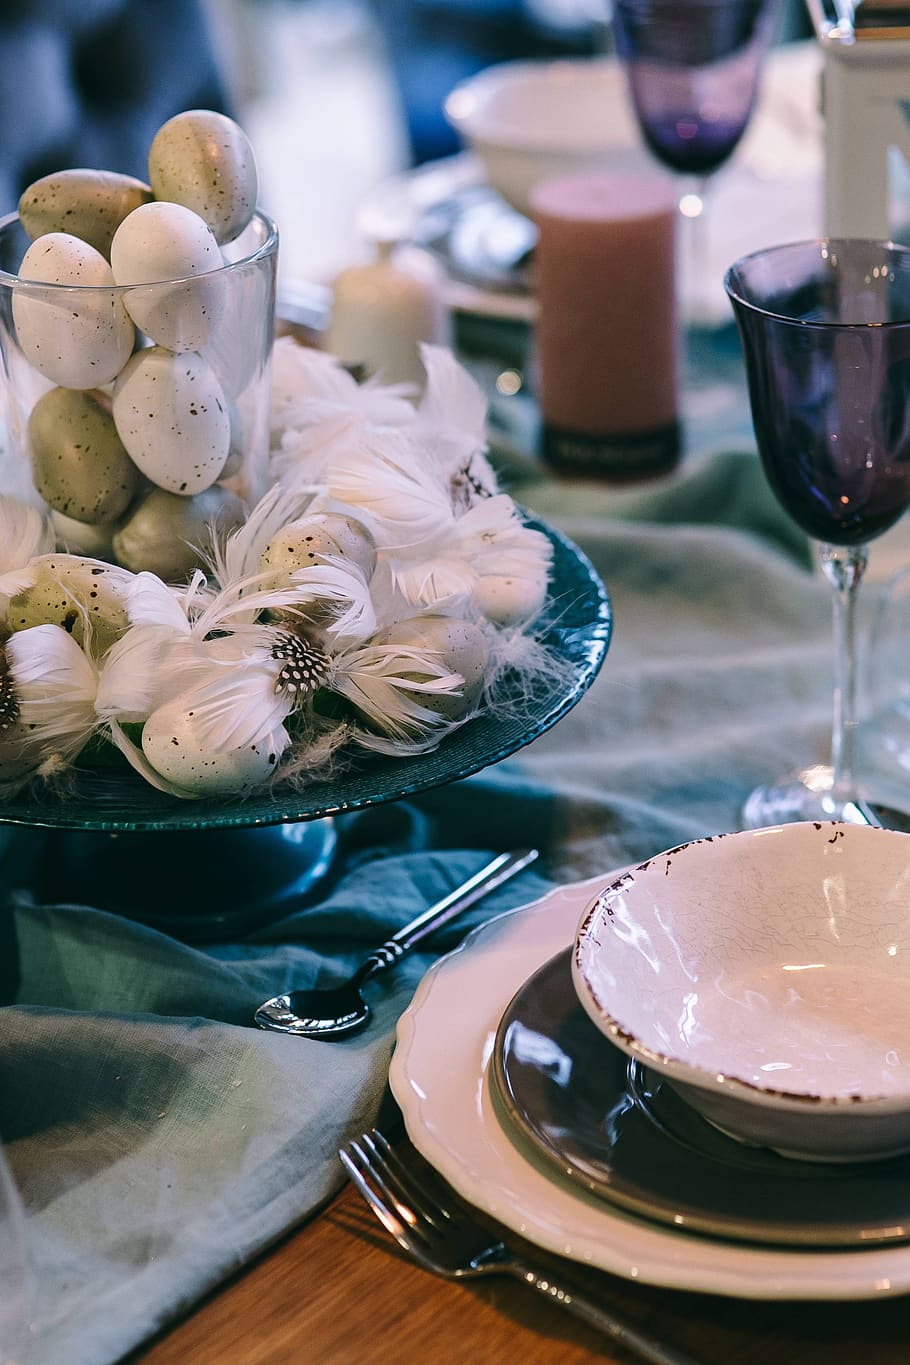 putih, meja, makan malam, restoran, anggun, telur, dekorasi, mewah, burung puyuh, bulu